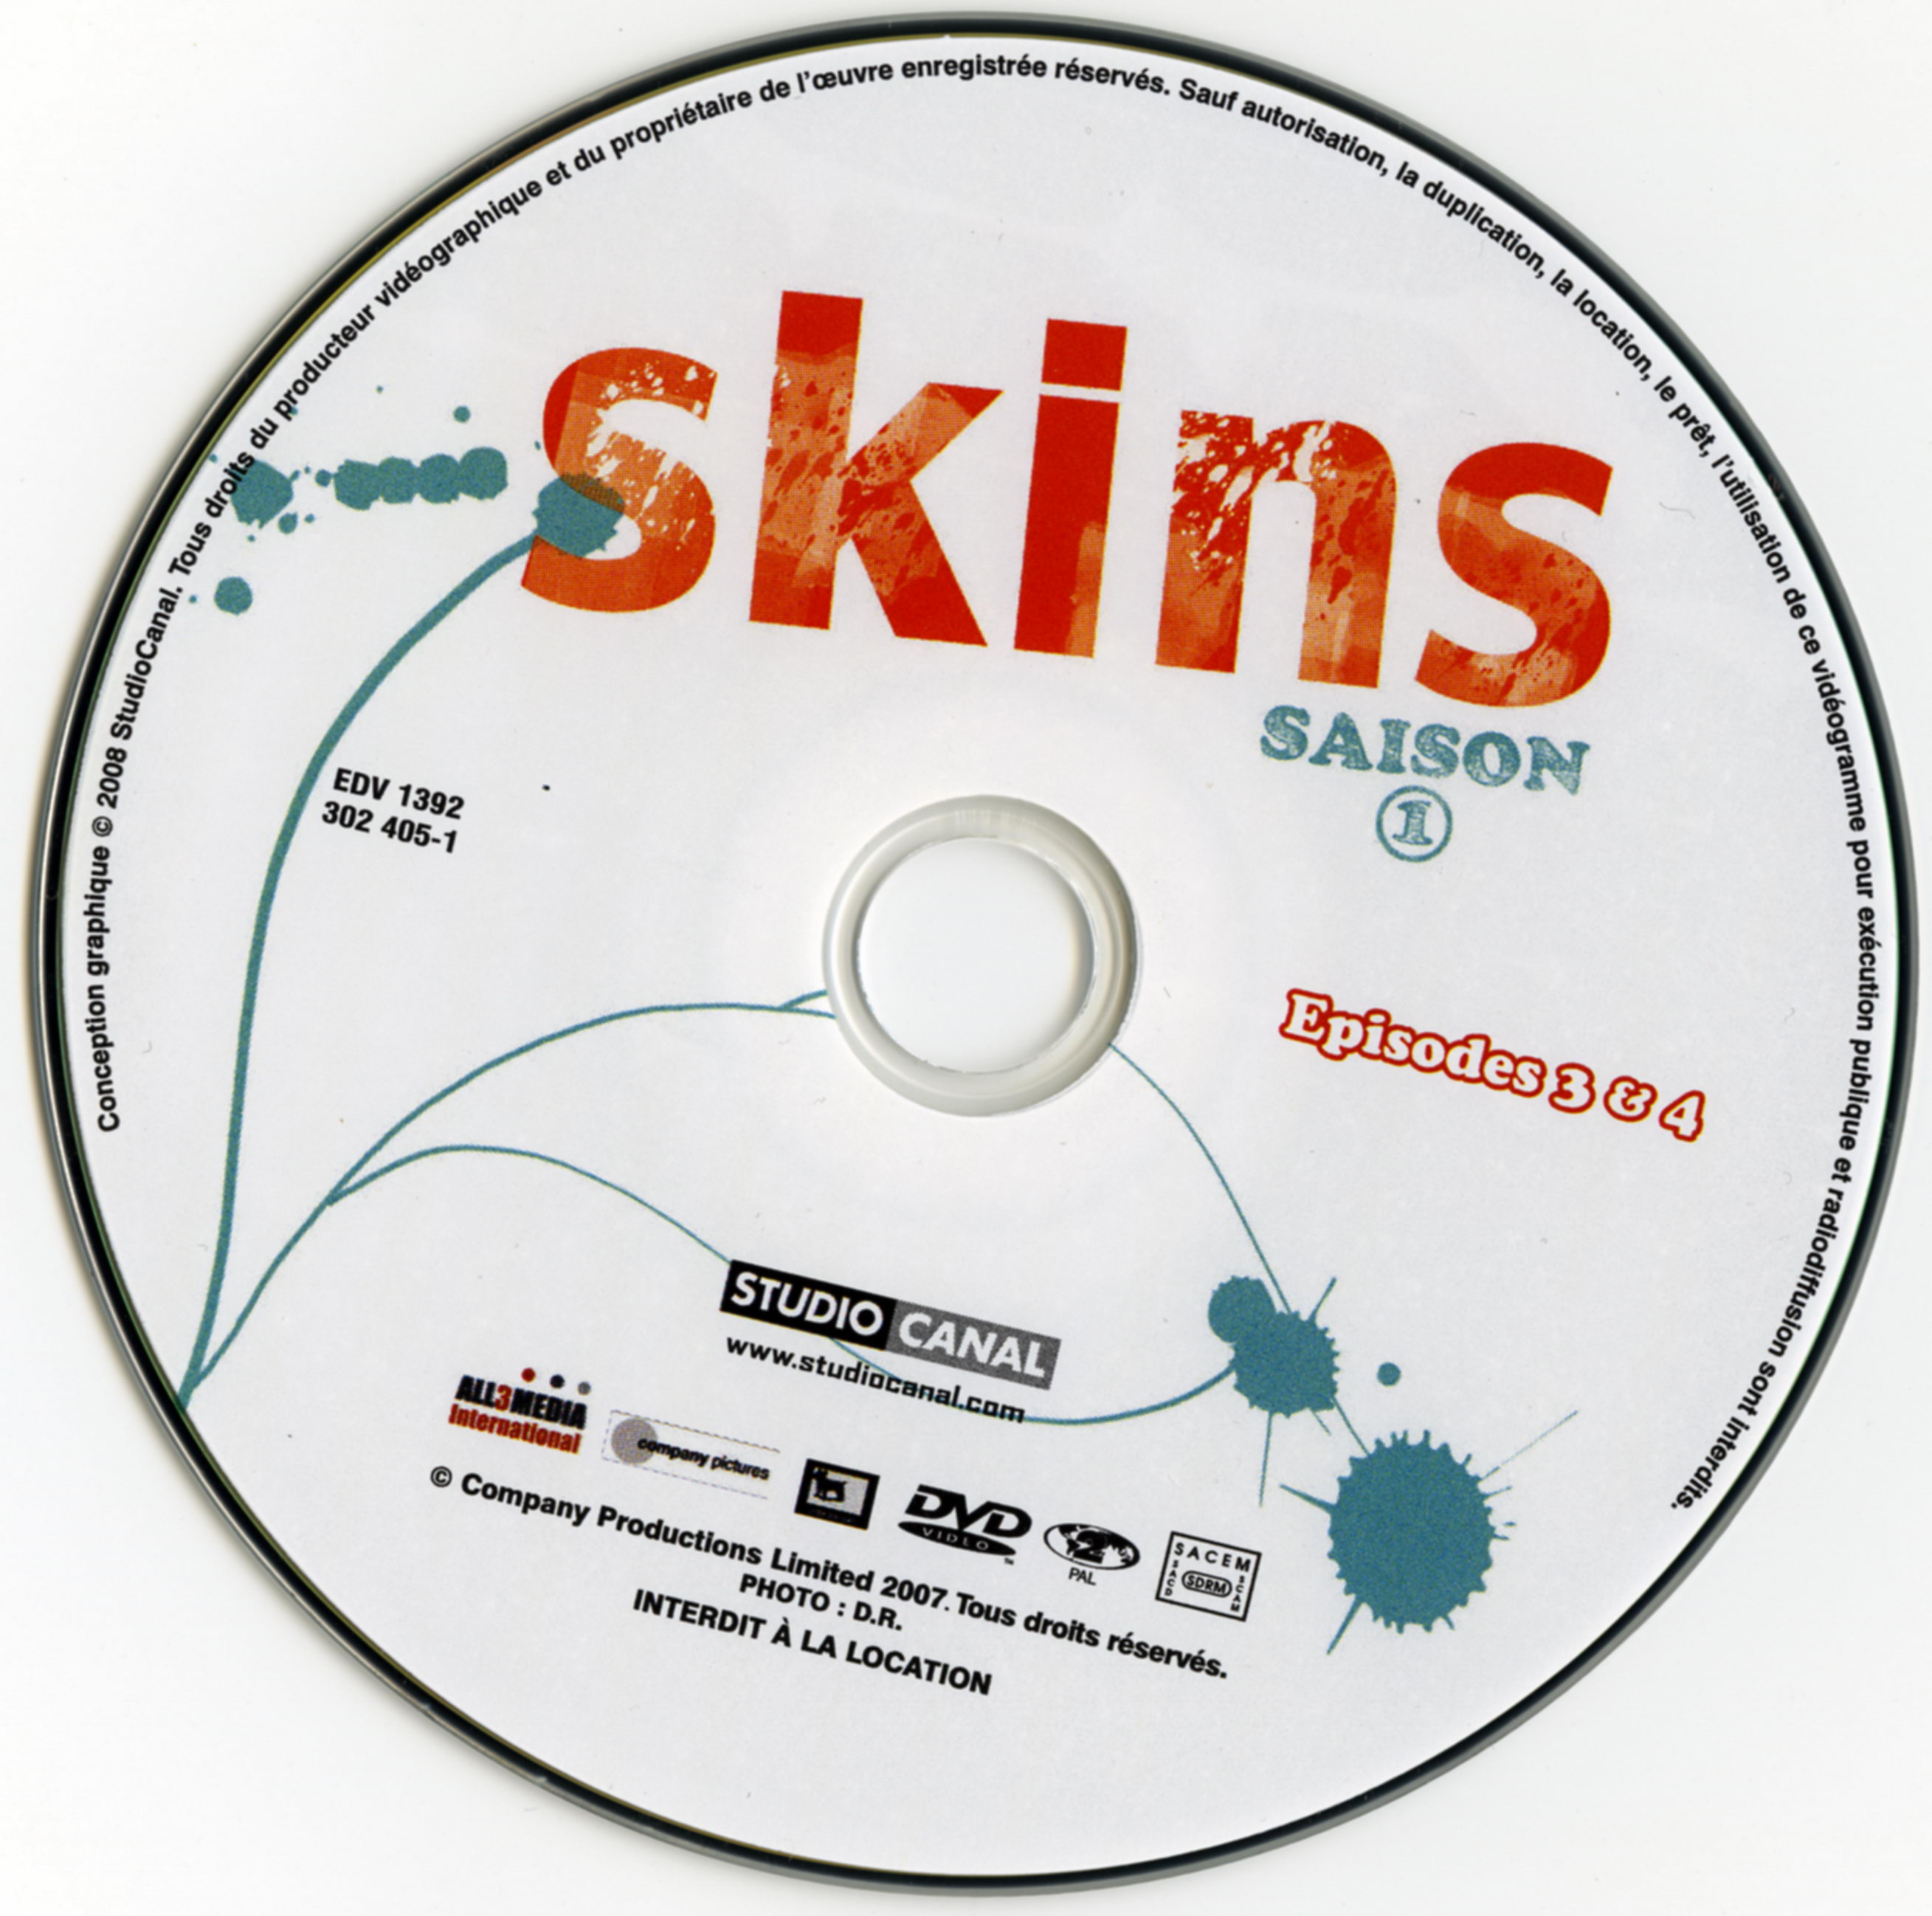 Skins Saison 1 DISC 2